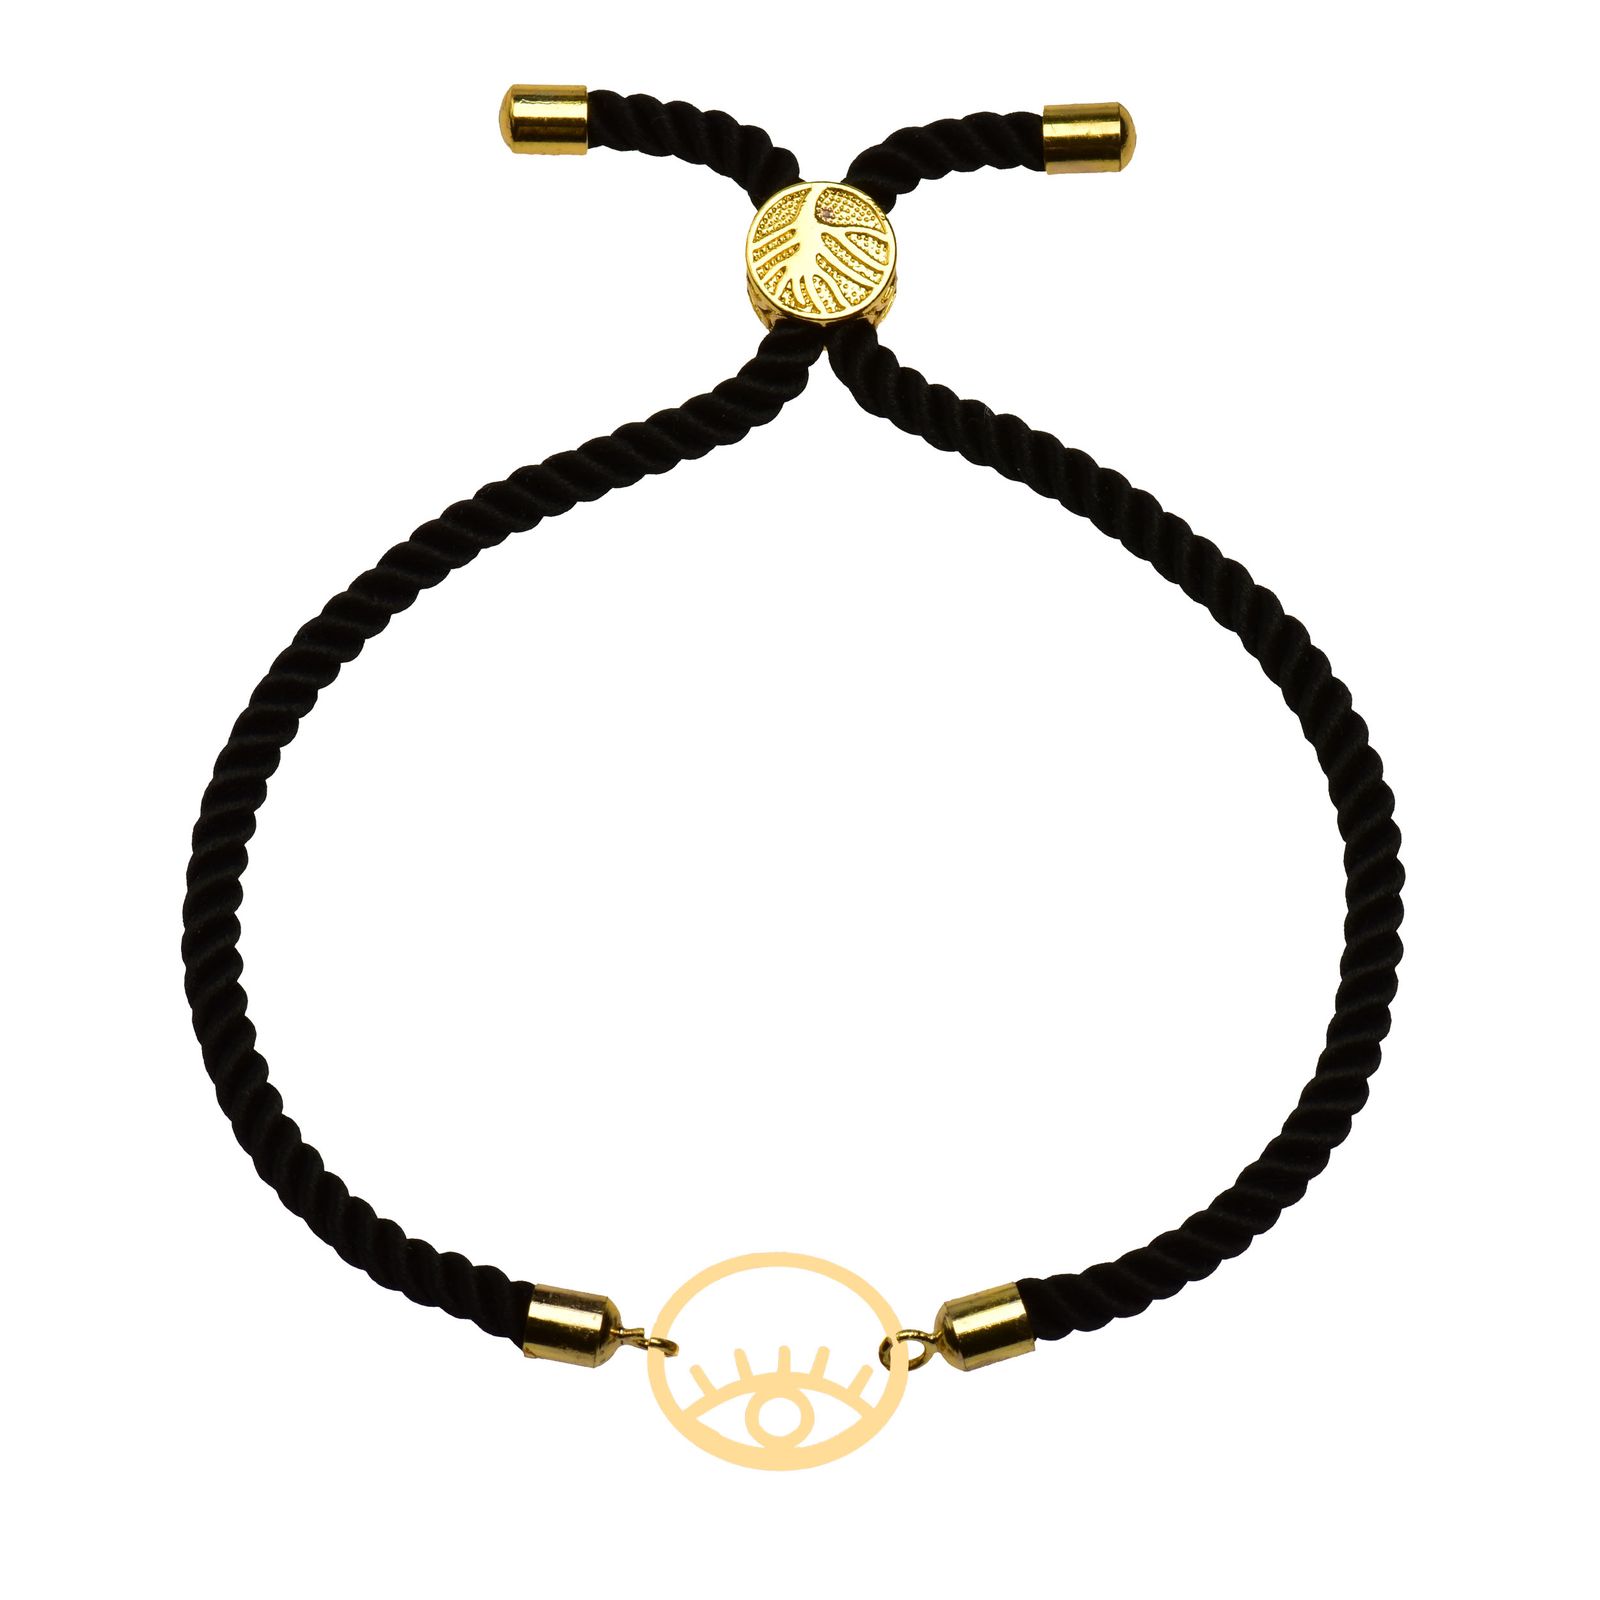 دستبند طلا 18 عیار زنانه کرابو طرح چشم نظر مدل Kr102214 -  - 2